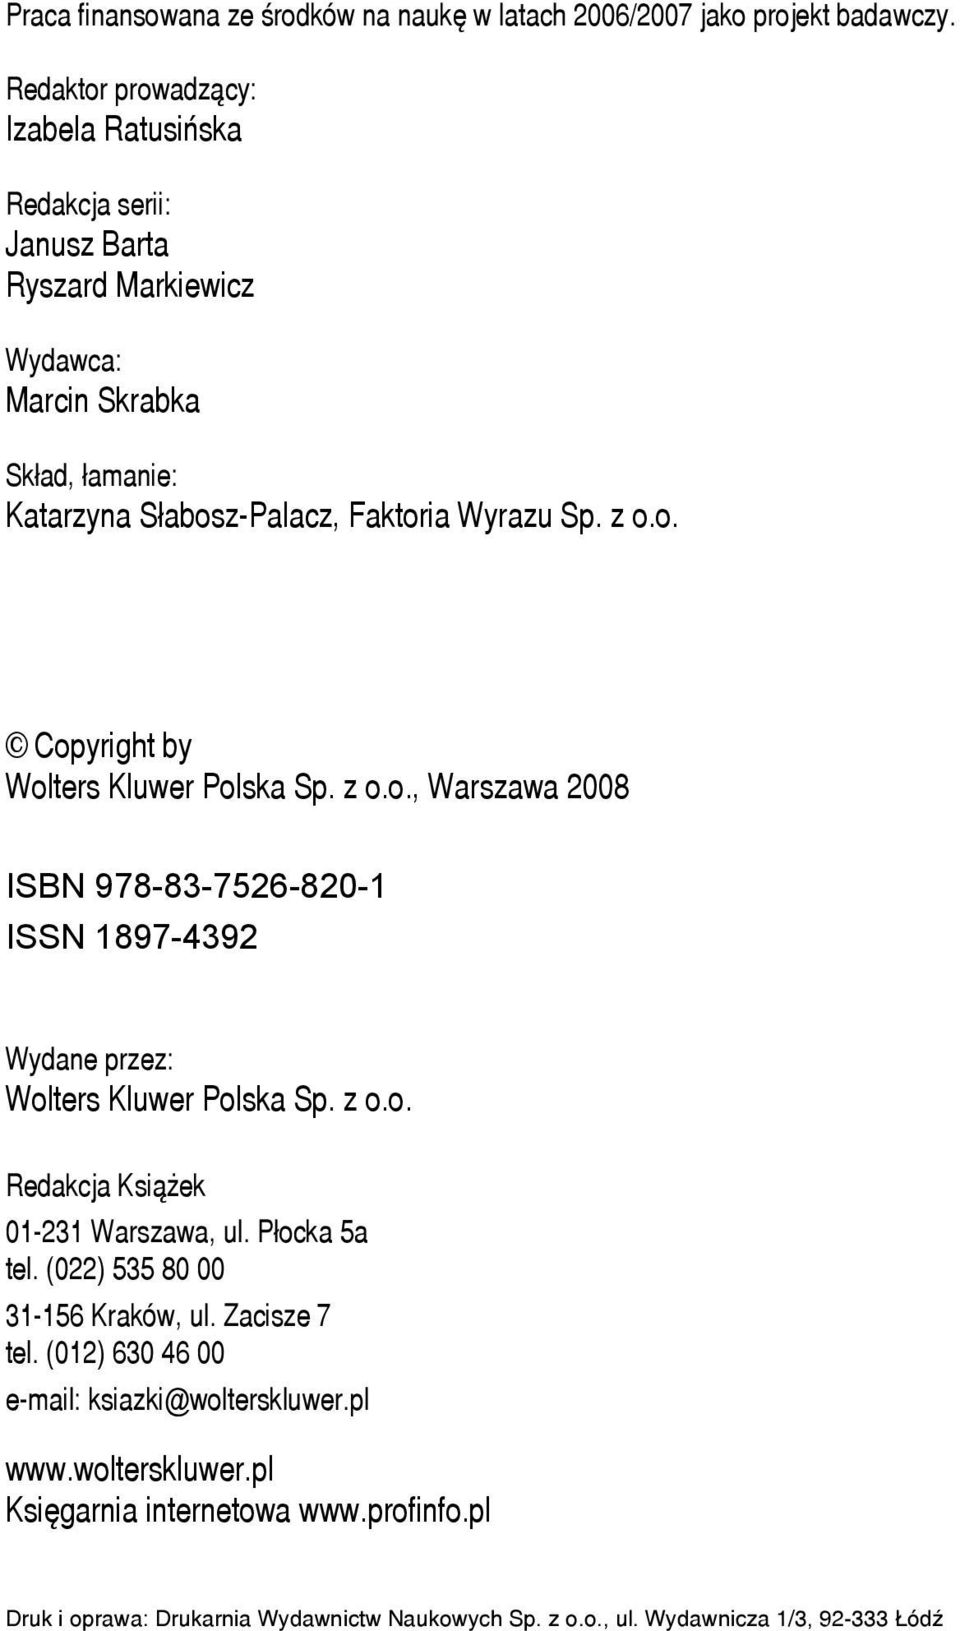 z o.o. Copyright by Wolters Kluwer Polska Sp. z o.o., Warszawa 2008 ISBN 978-83-7526-820-1 ISSN 1897-4392 Wydane przez: Wolters Kluwer Polska Sp. z o.o. Redakcja Książek 01-231 Warszawa, ul.